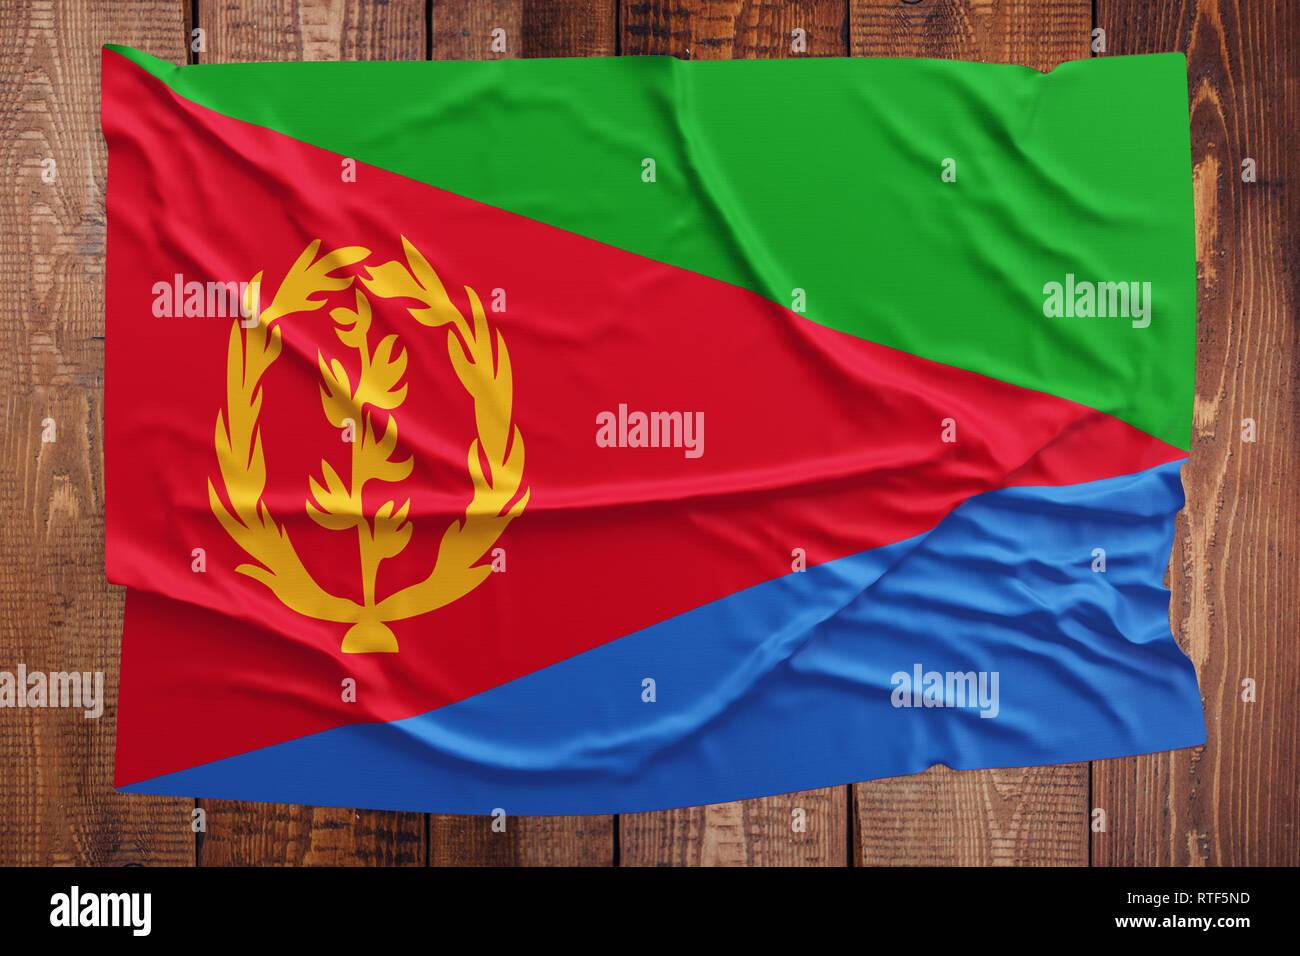 Flagge Eritrea auf einem Holztisch Hintergrund. Faltige eritreischen Flag Startseite anzeigen. Stockfoto